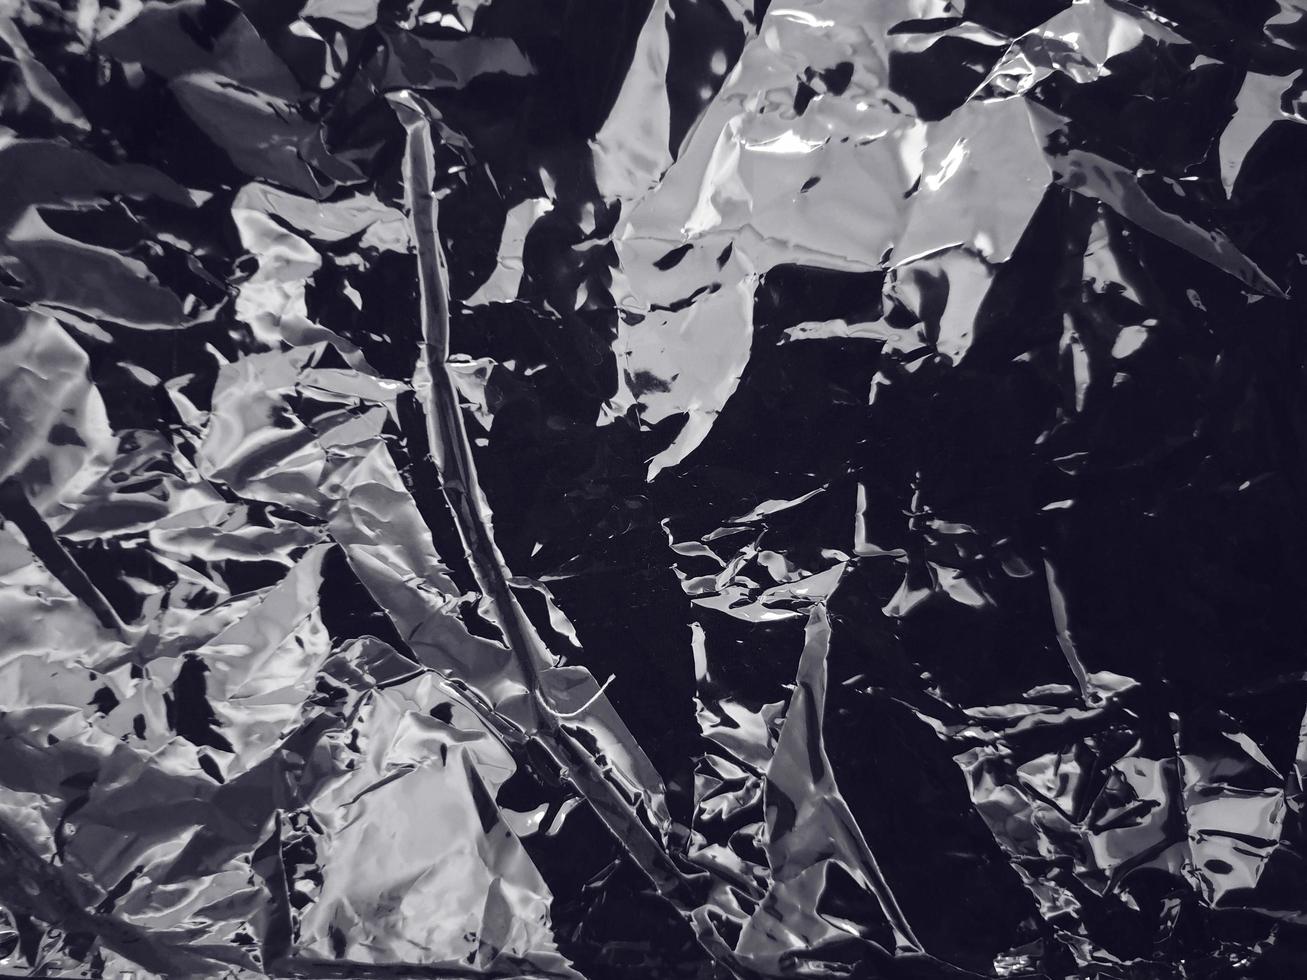 Detalle de la textura plástica de urdimbre en blanco y negro para el fondo. plástico grunge con reflejo de luz suave foto